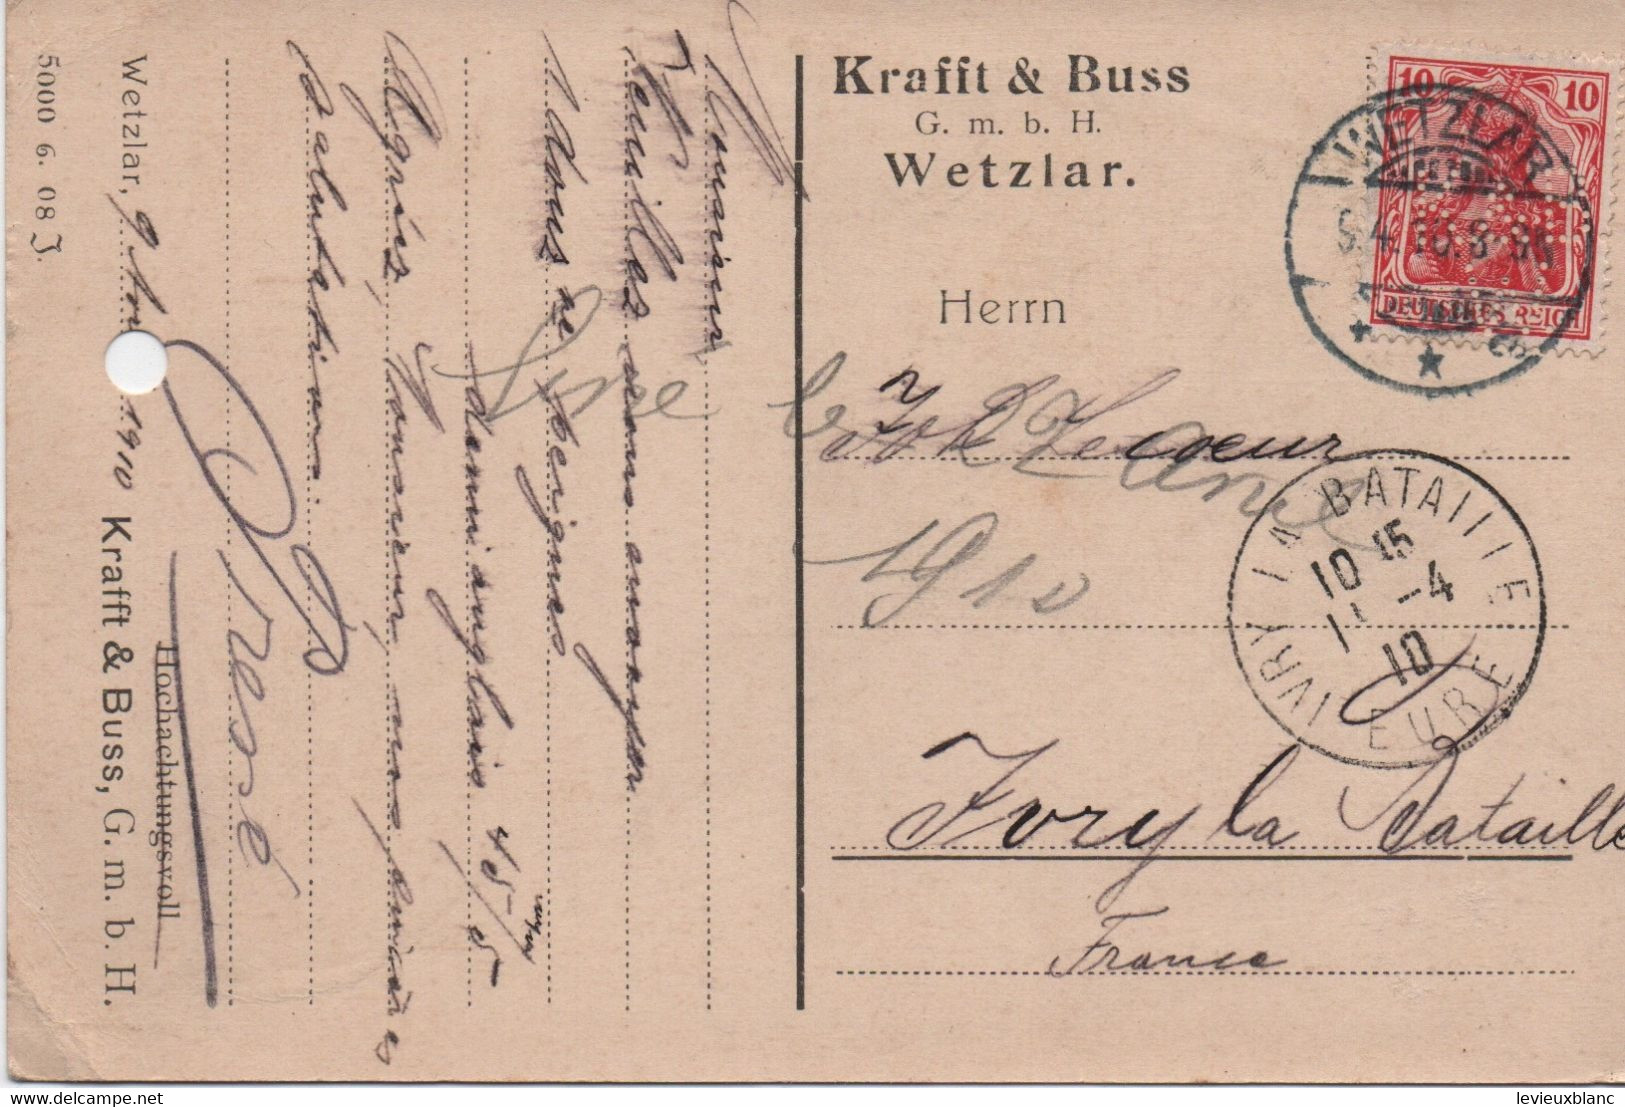 Carte Postale Sans Illustration/Krafft-Buss/ Wetzlar/Commande/LECOEUR/Fabricant De Peignes/Ivry La Bataille/1910 TIMB141 - Wetzlar